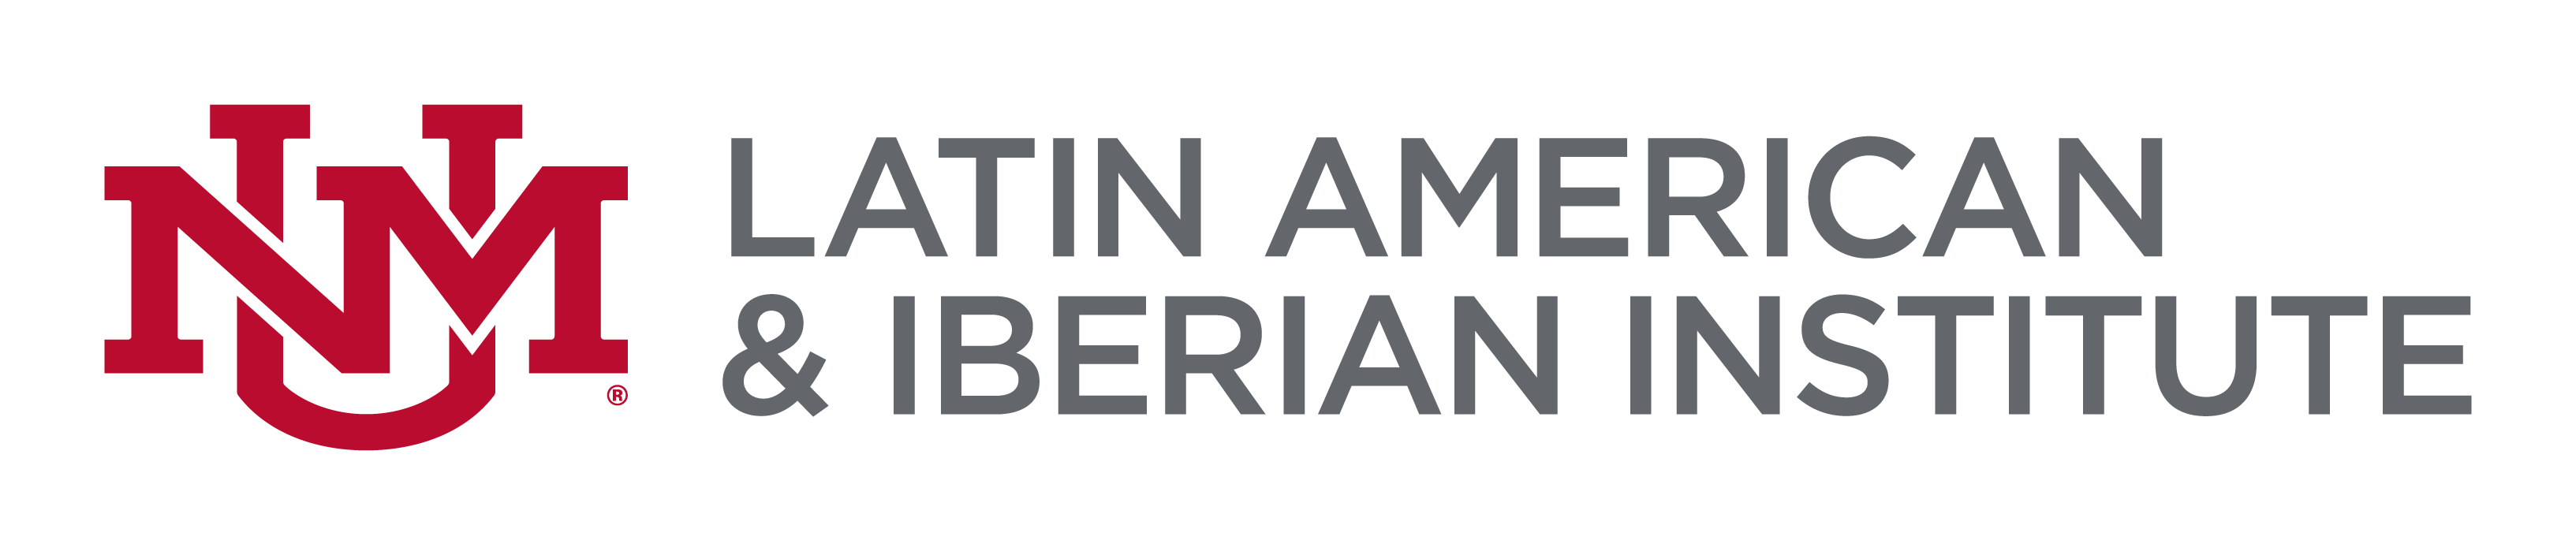 UNM Latin American and Iberian Institute logo